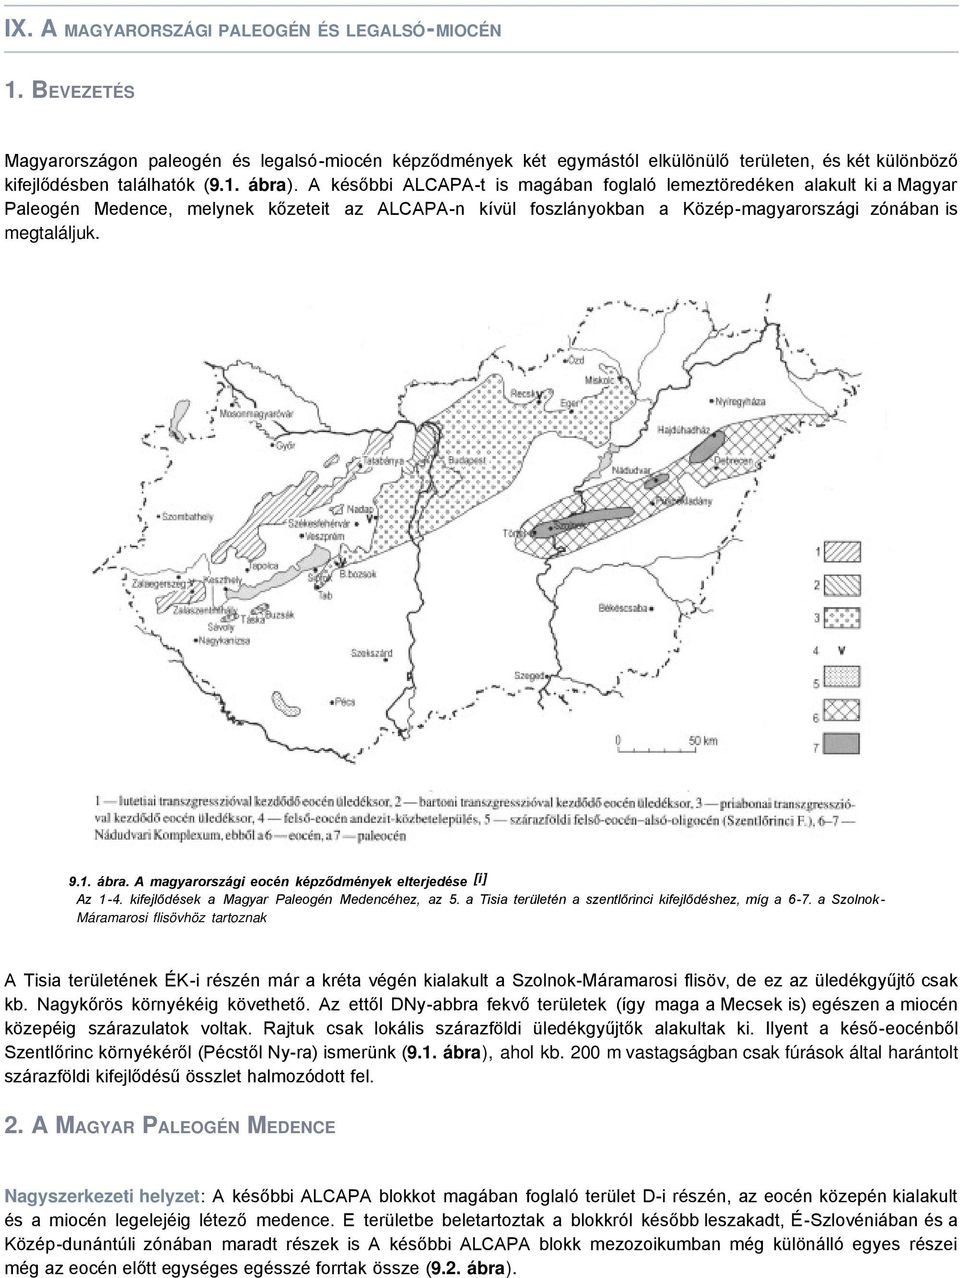 A magyarországi eocén képződmények elterjedése [i] Az 1-4. kifejlődések a Magyar Paleogén Medencéhez, az 5. a Tisia területén a szentlőrinci kifejlődéshez, míg a 6-7.